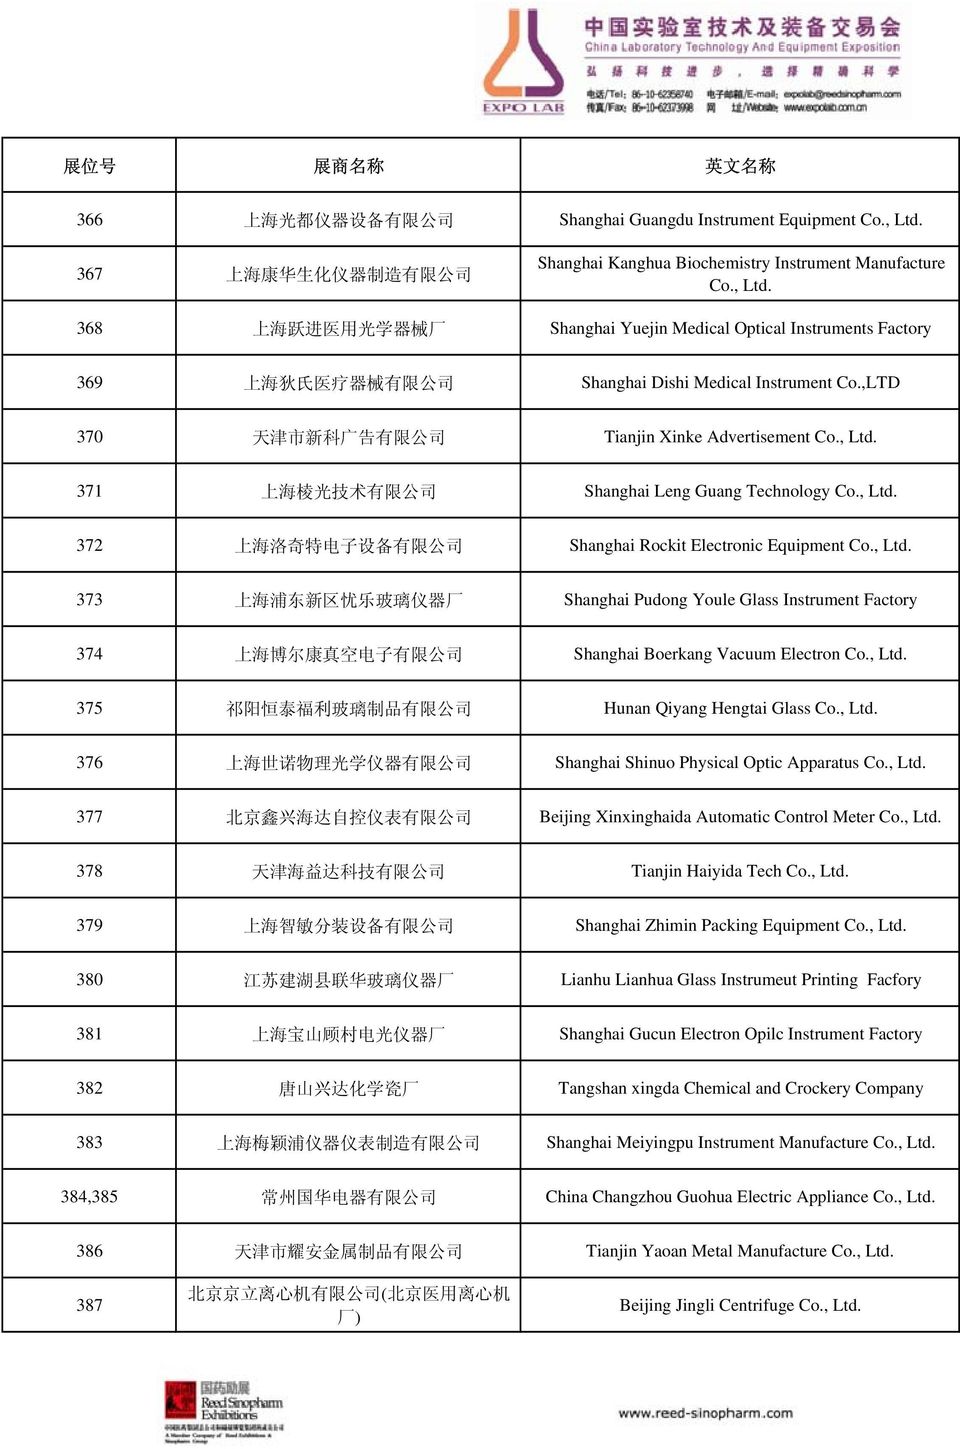 368 上 海 跃 进 医 用 光 学 器 械 厂 Shanghai Yuejin Medical Optical Instruments Factory 369 上 海 狄 氏 医 疗 器 械 有 限 公 司 Shanghai Dishi Medical Instrument Co.